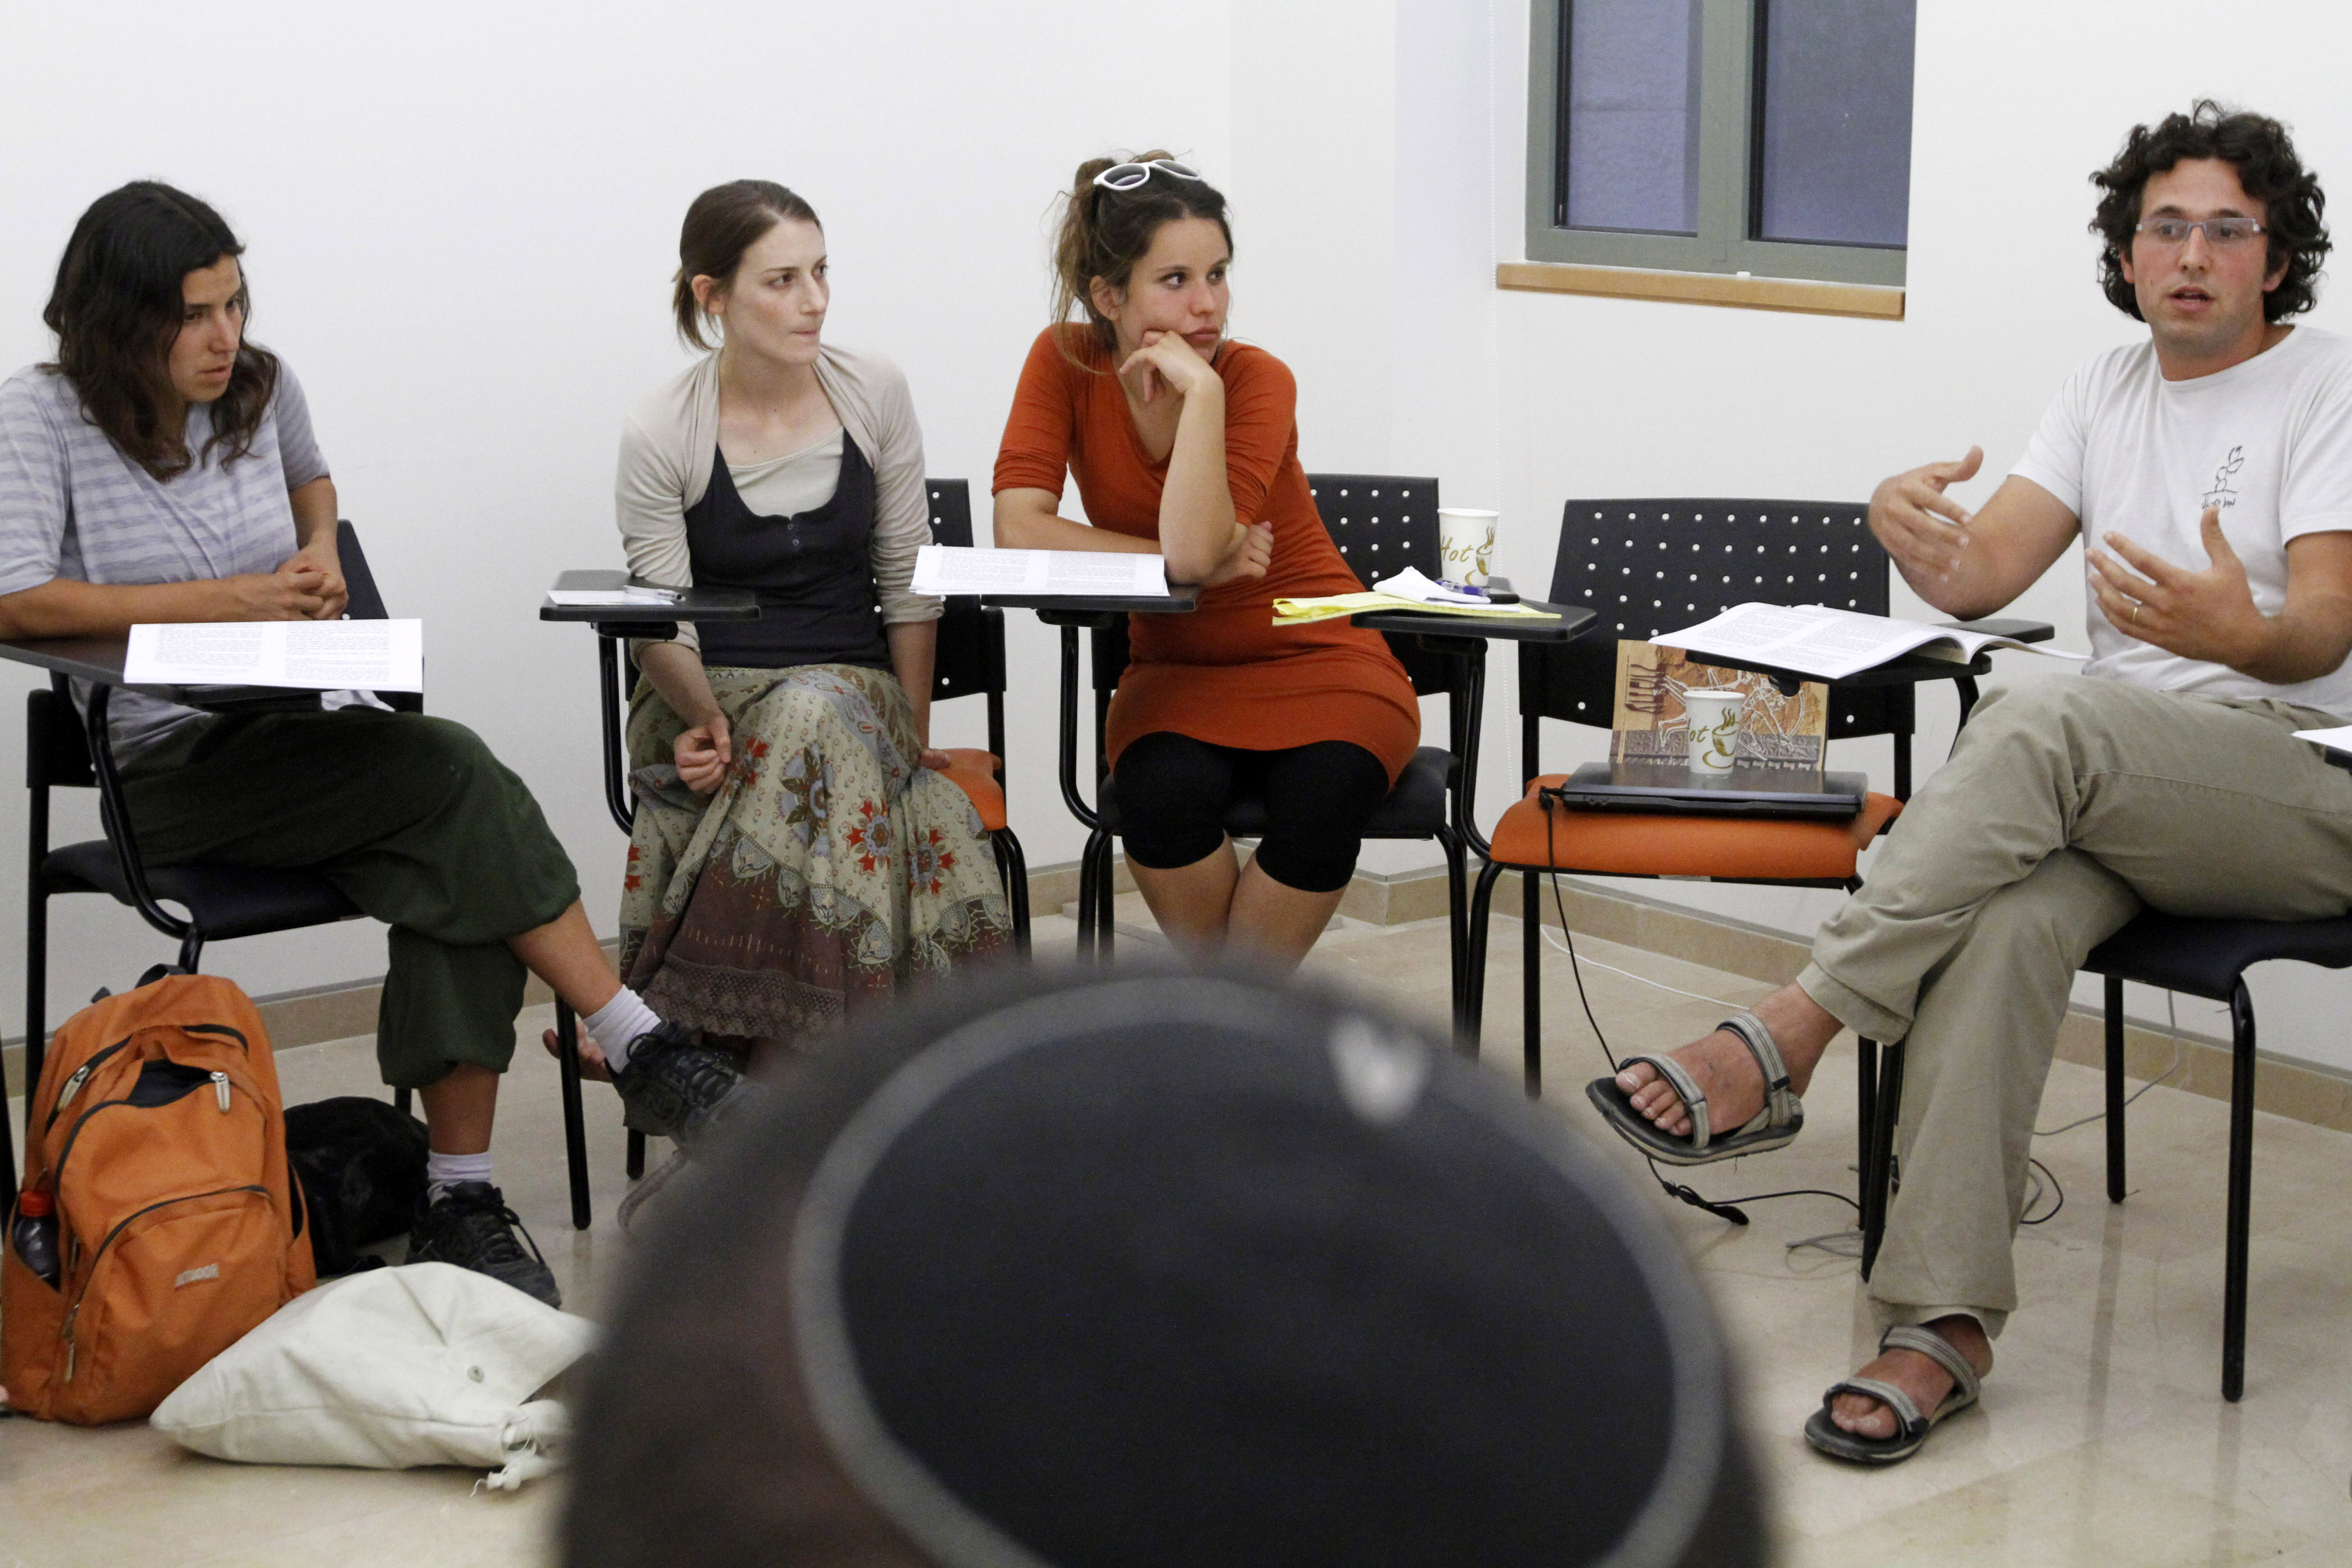 21 שנה אחרי רצח רבין: מה חידשה ההתחדשות היהודית?